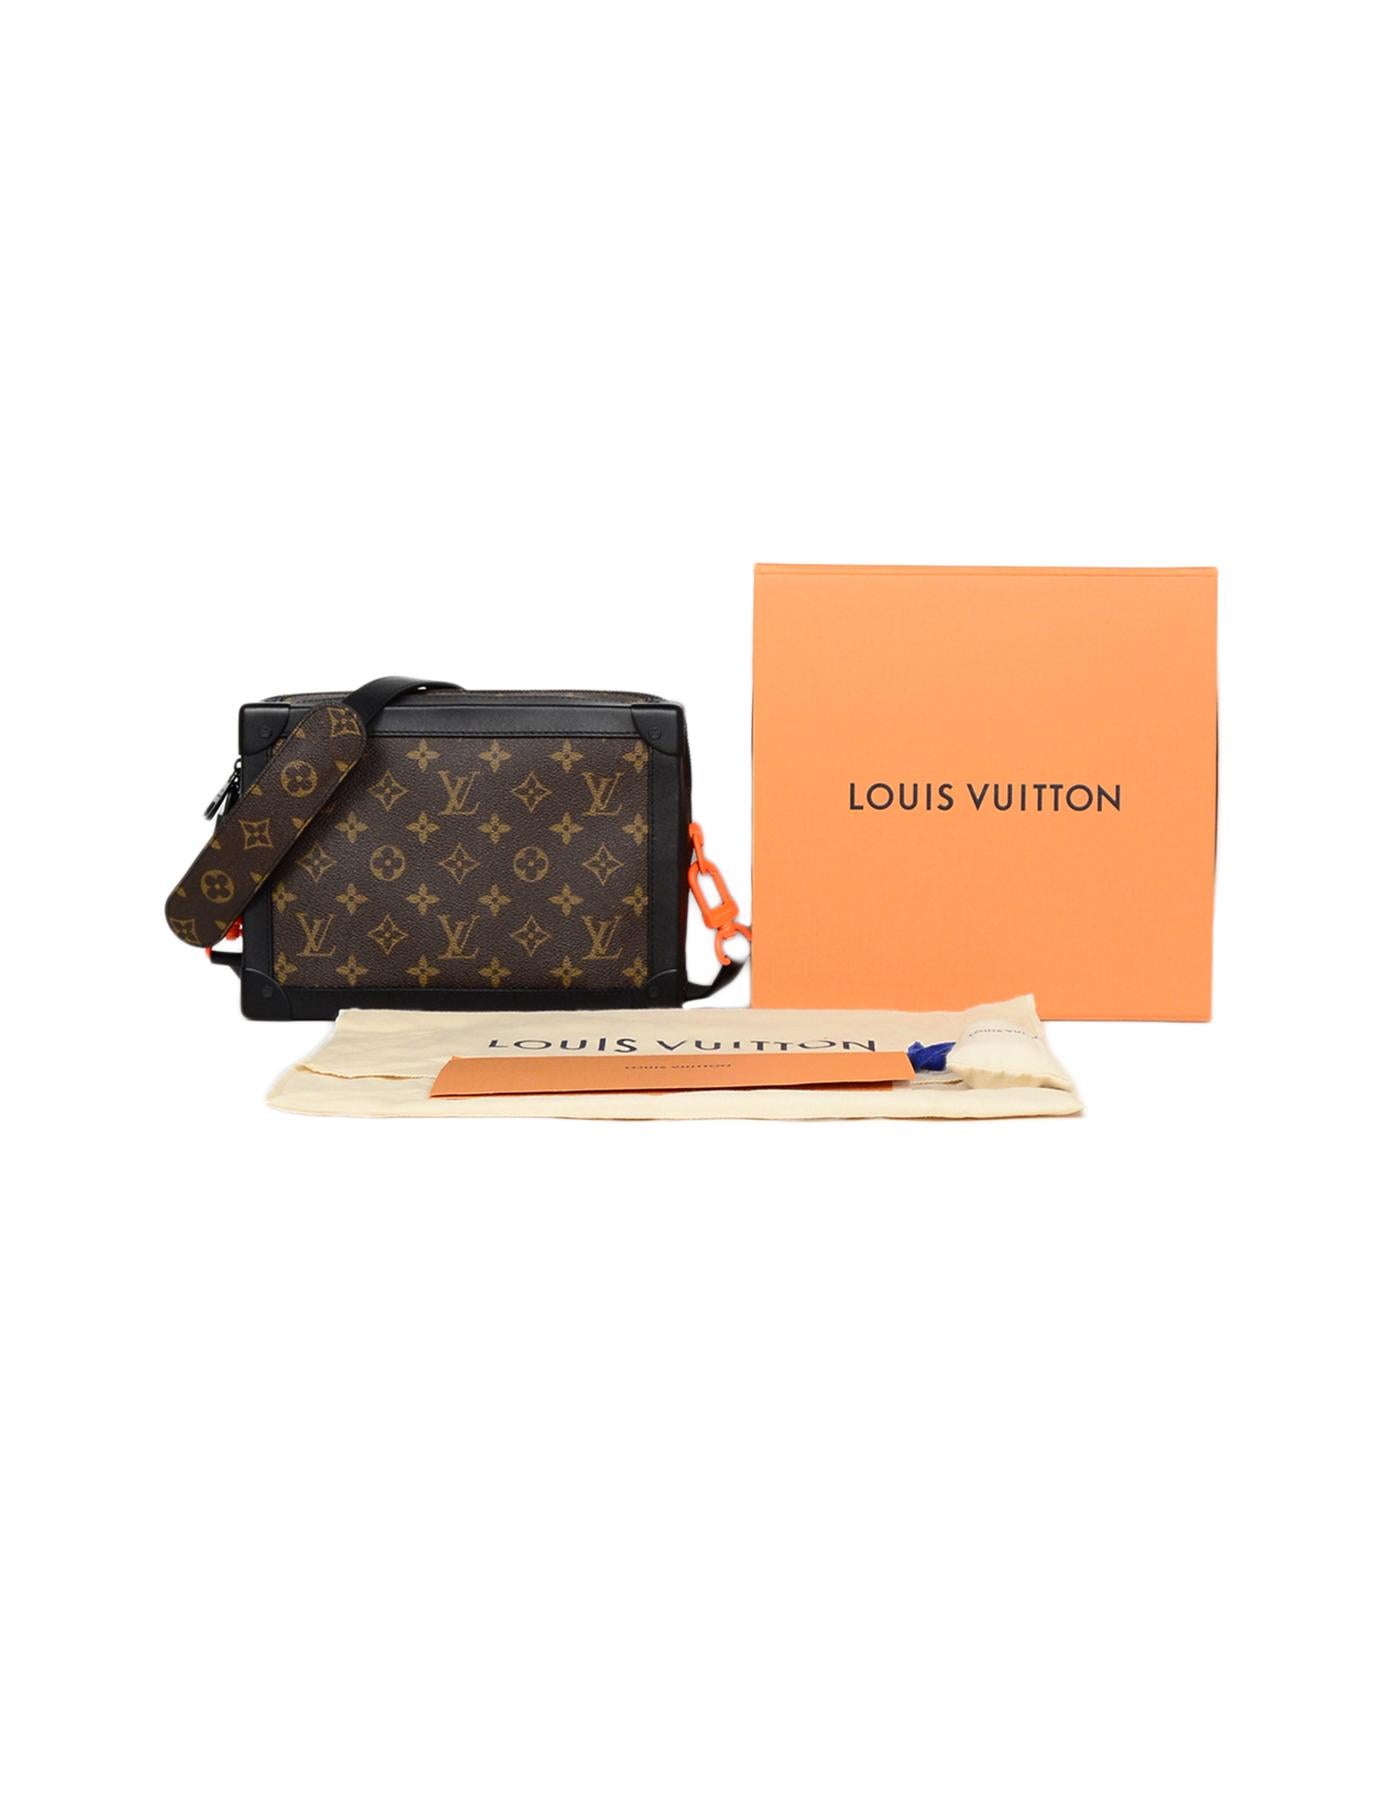 Louis Vuitton x Virgil Abloh '19 Monogram Canvas Soft Trunk Messenger Bag 2